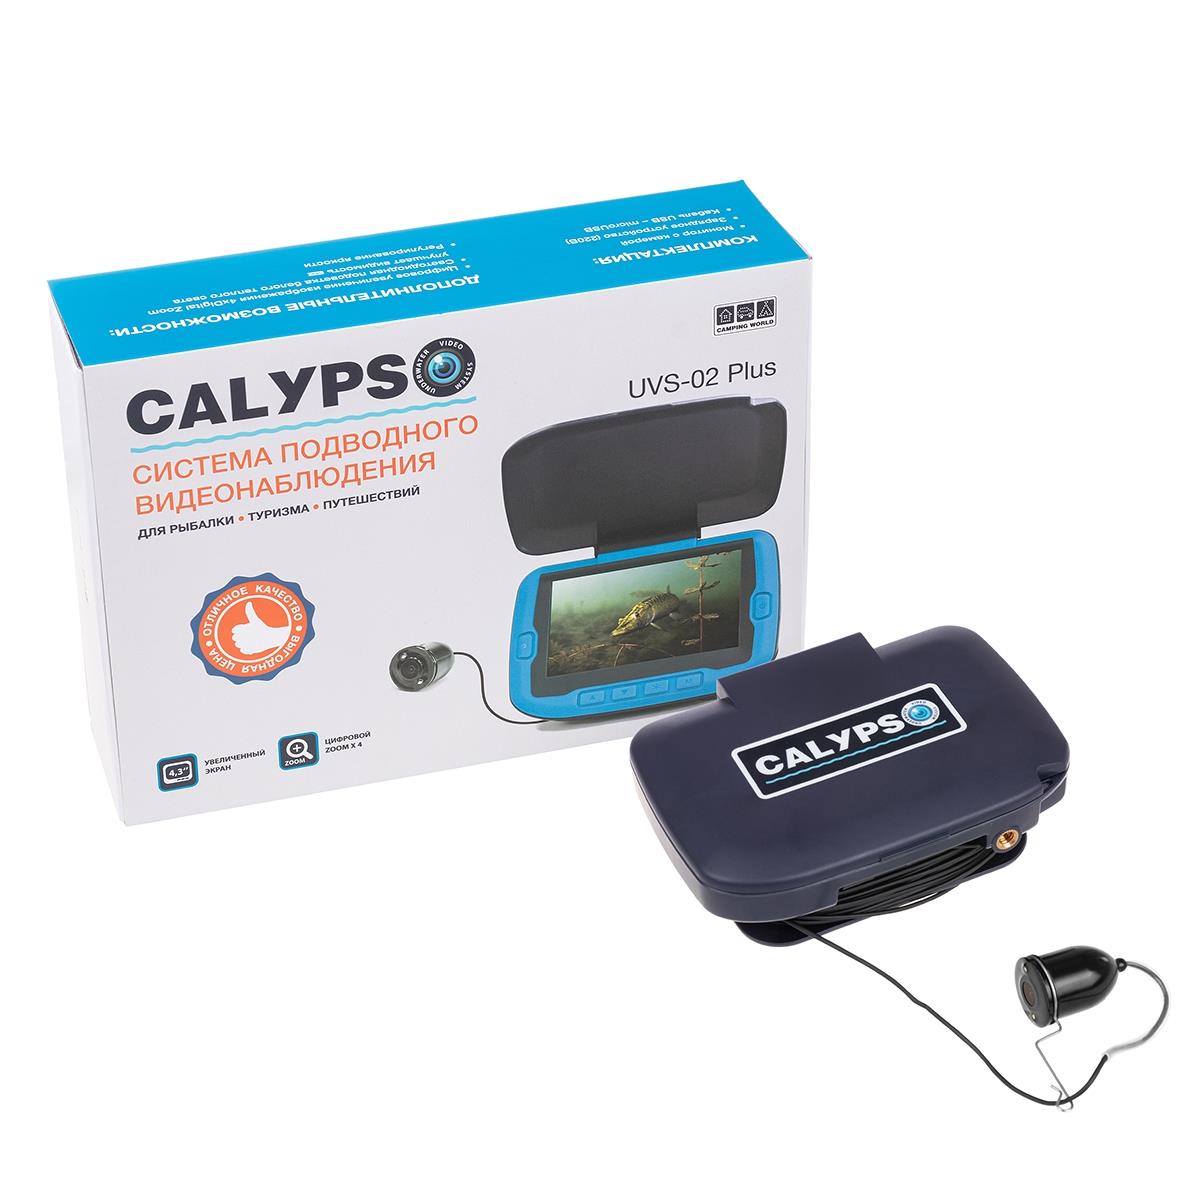 Подводная видеокамера CALYPSO UVS-02 PLUS (FDV-1112) походный стол camping world